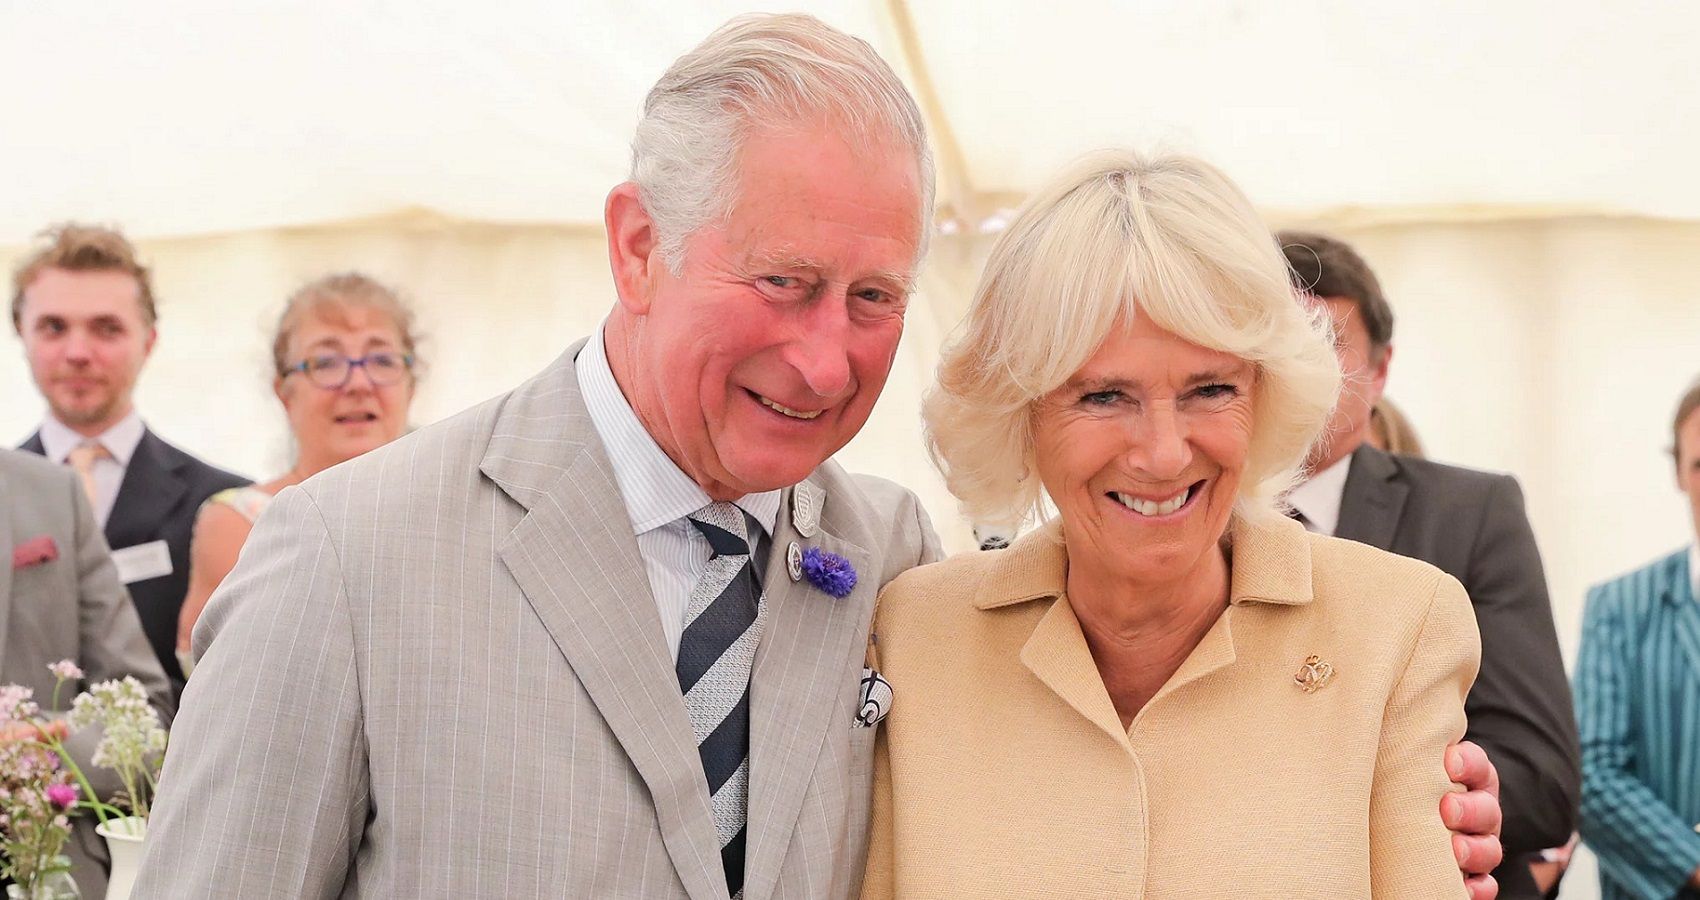 Homem que afirma ser “Love Child” de Charles e Camilla aumenta a tensão no tributo à rainha Elizabeth